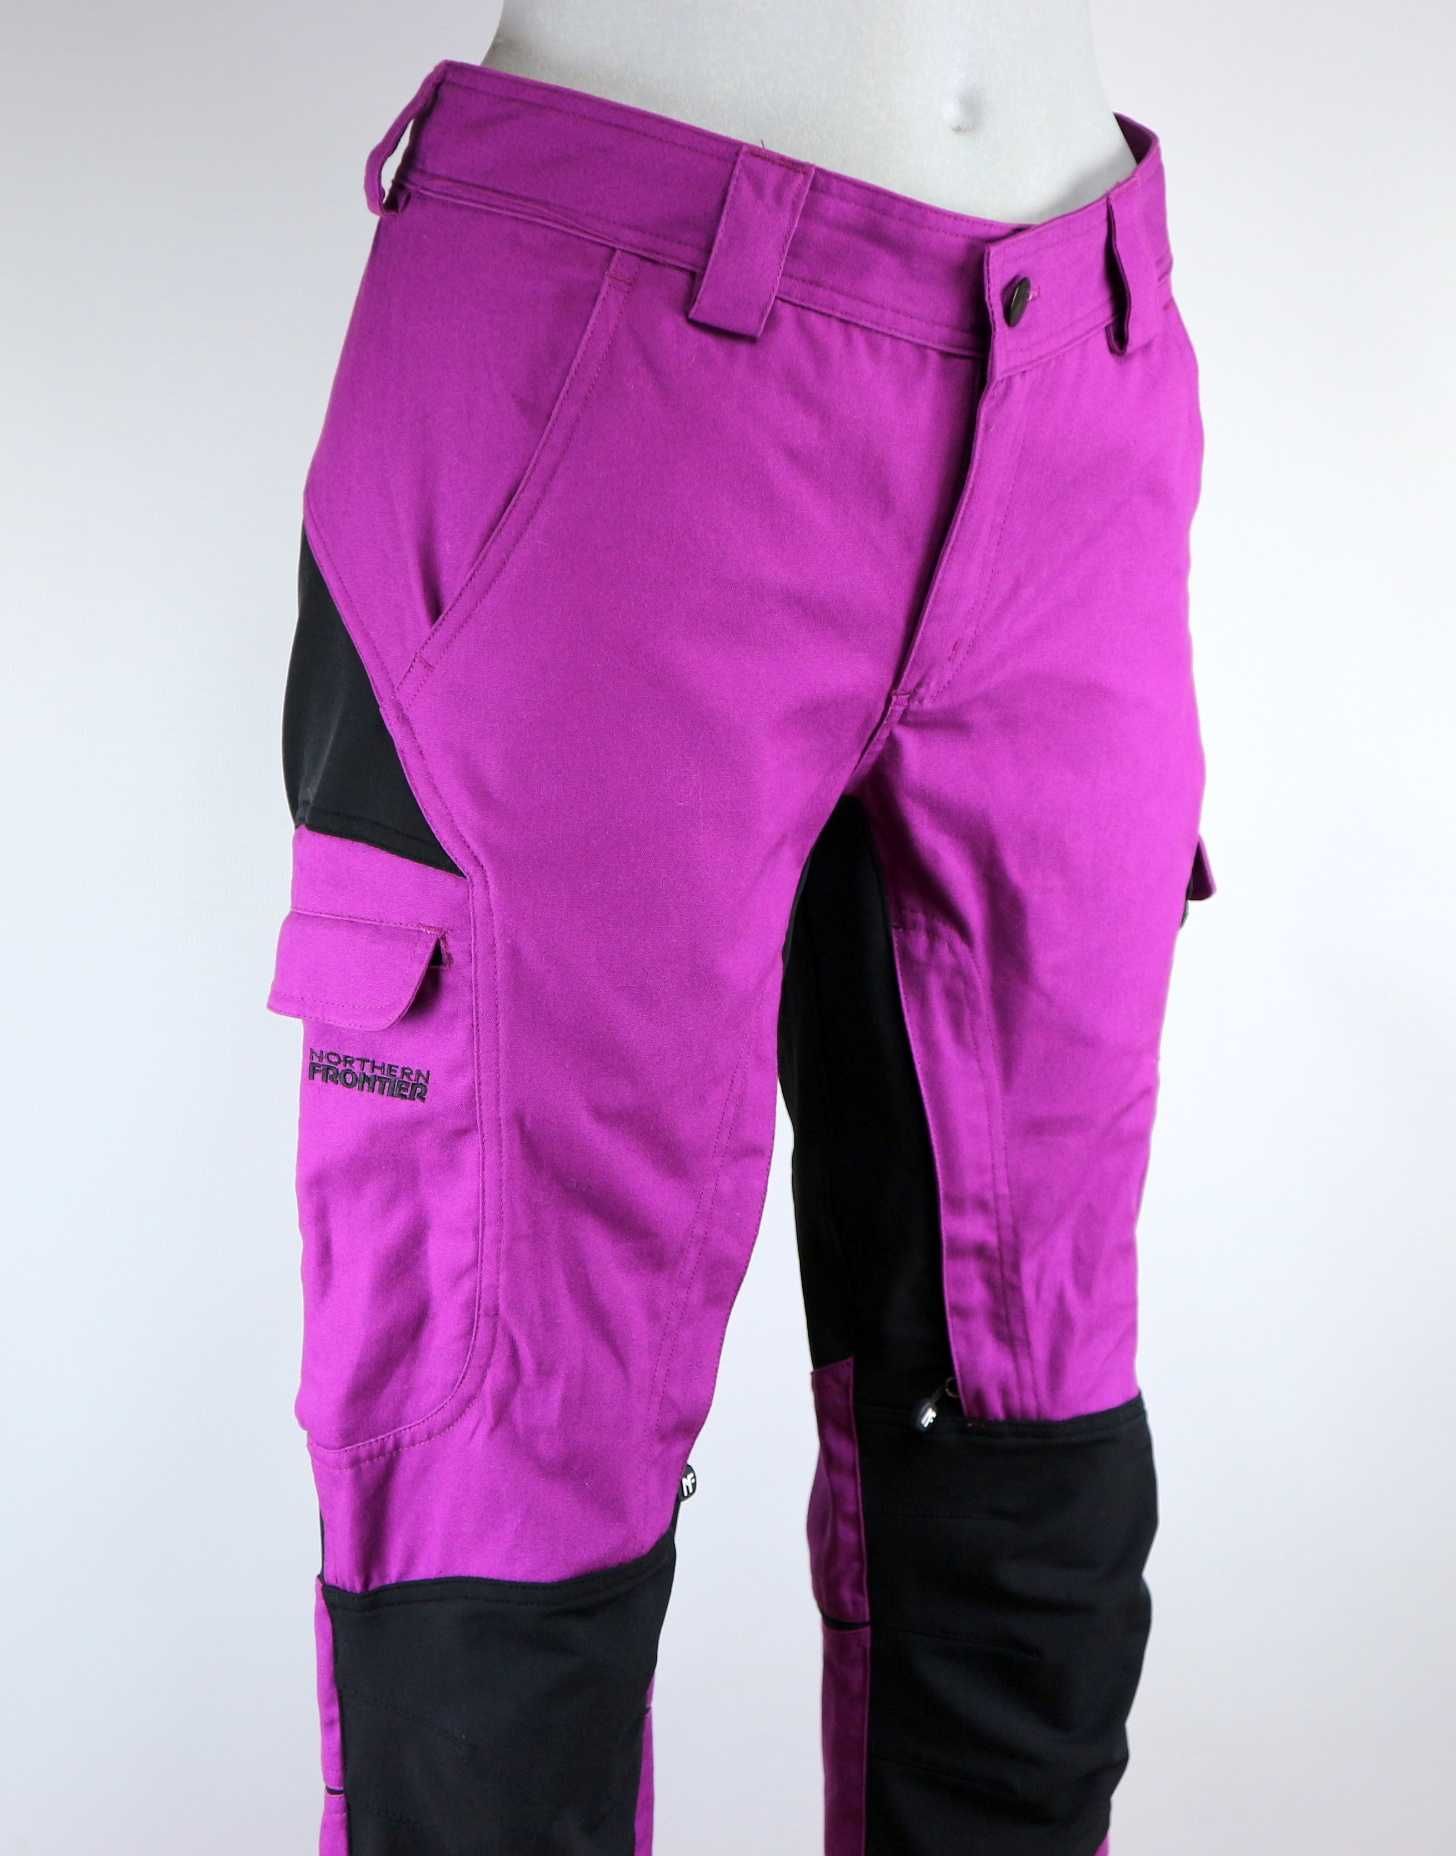 Northern Frontier Teide hybrydowe spodnie outdoorowe M